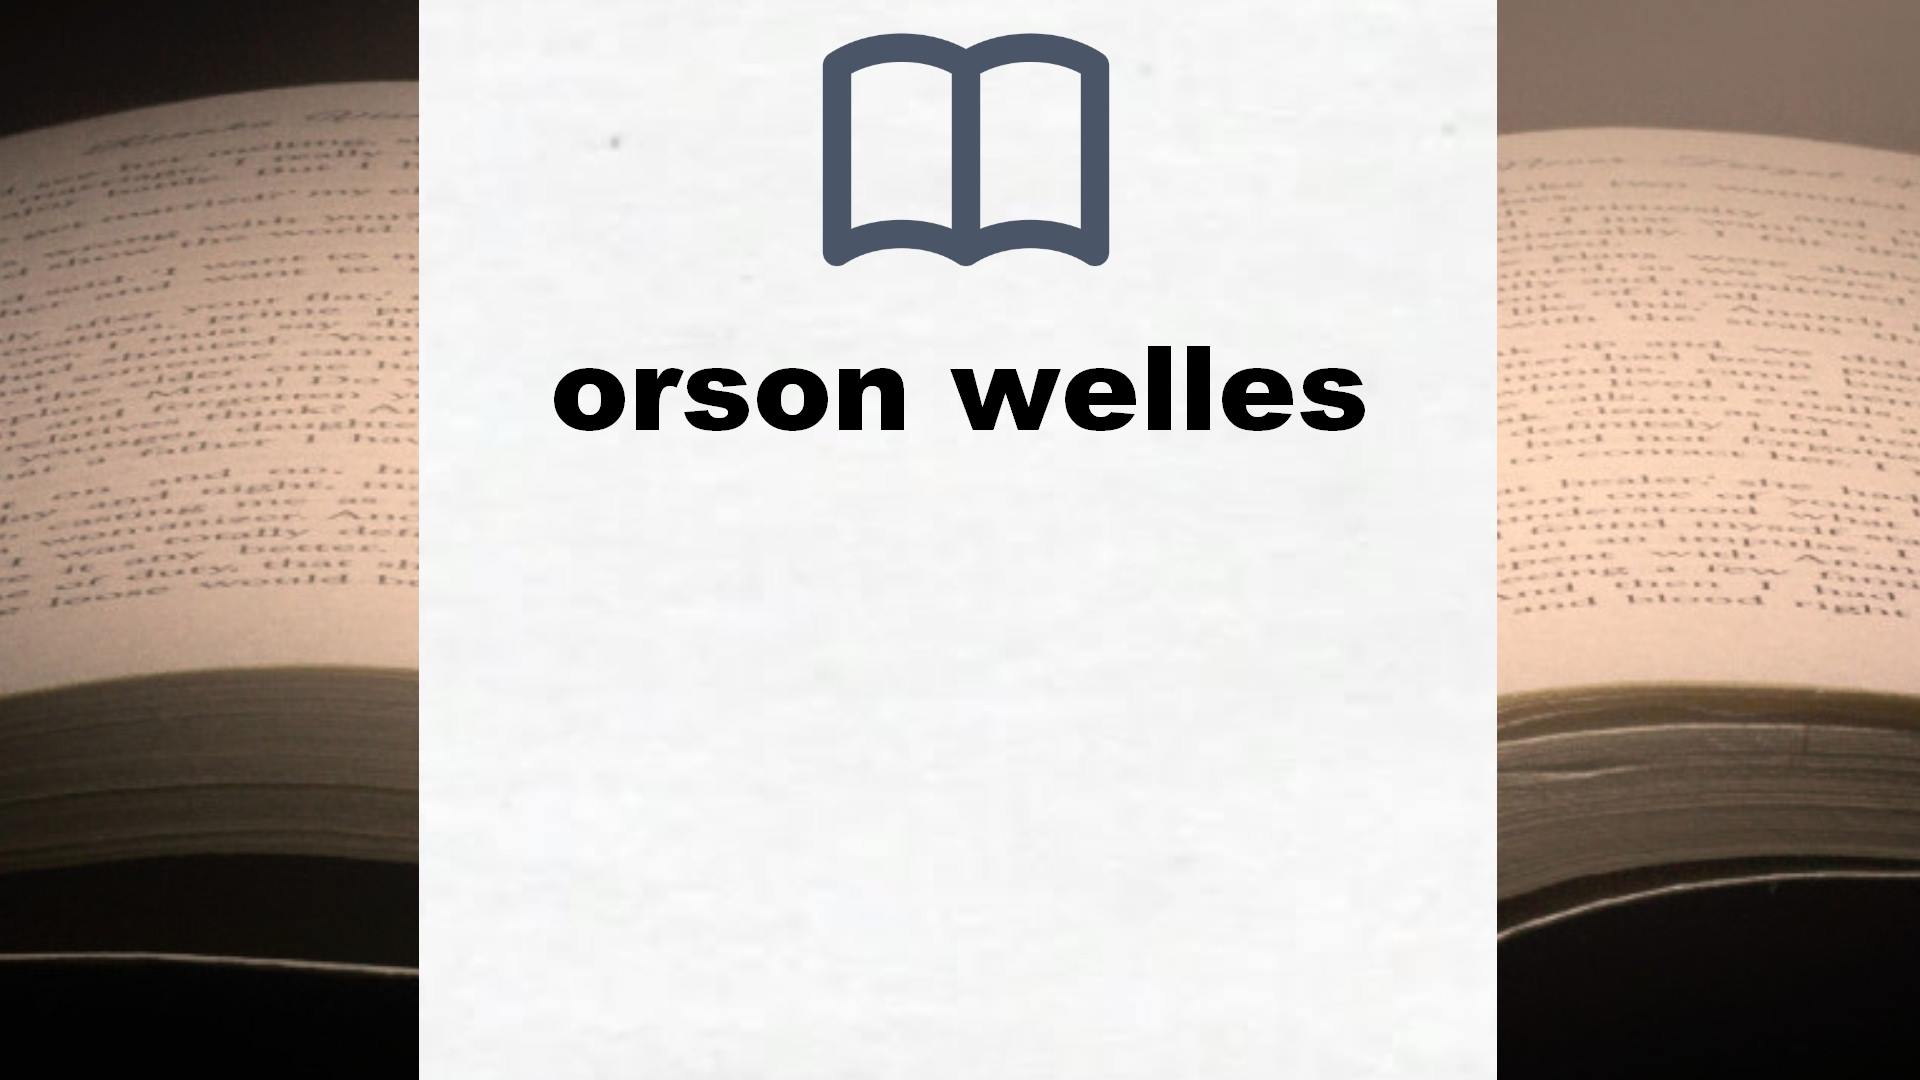 Libros sobre orson welles